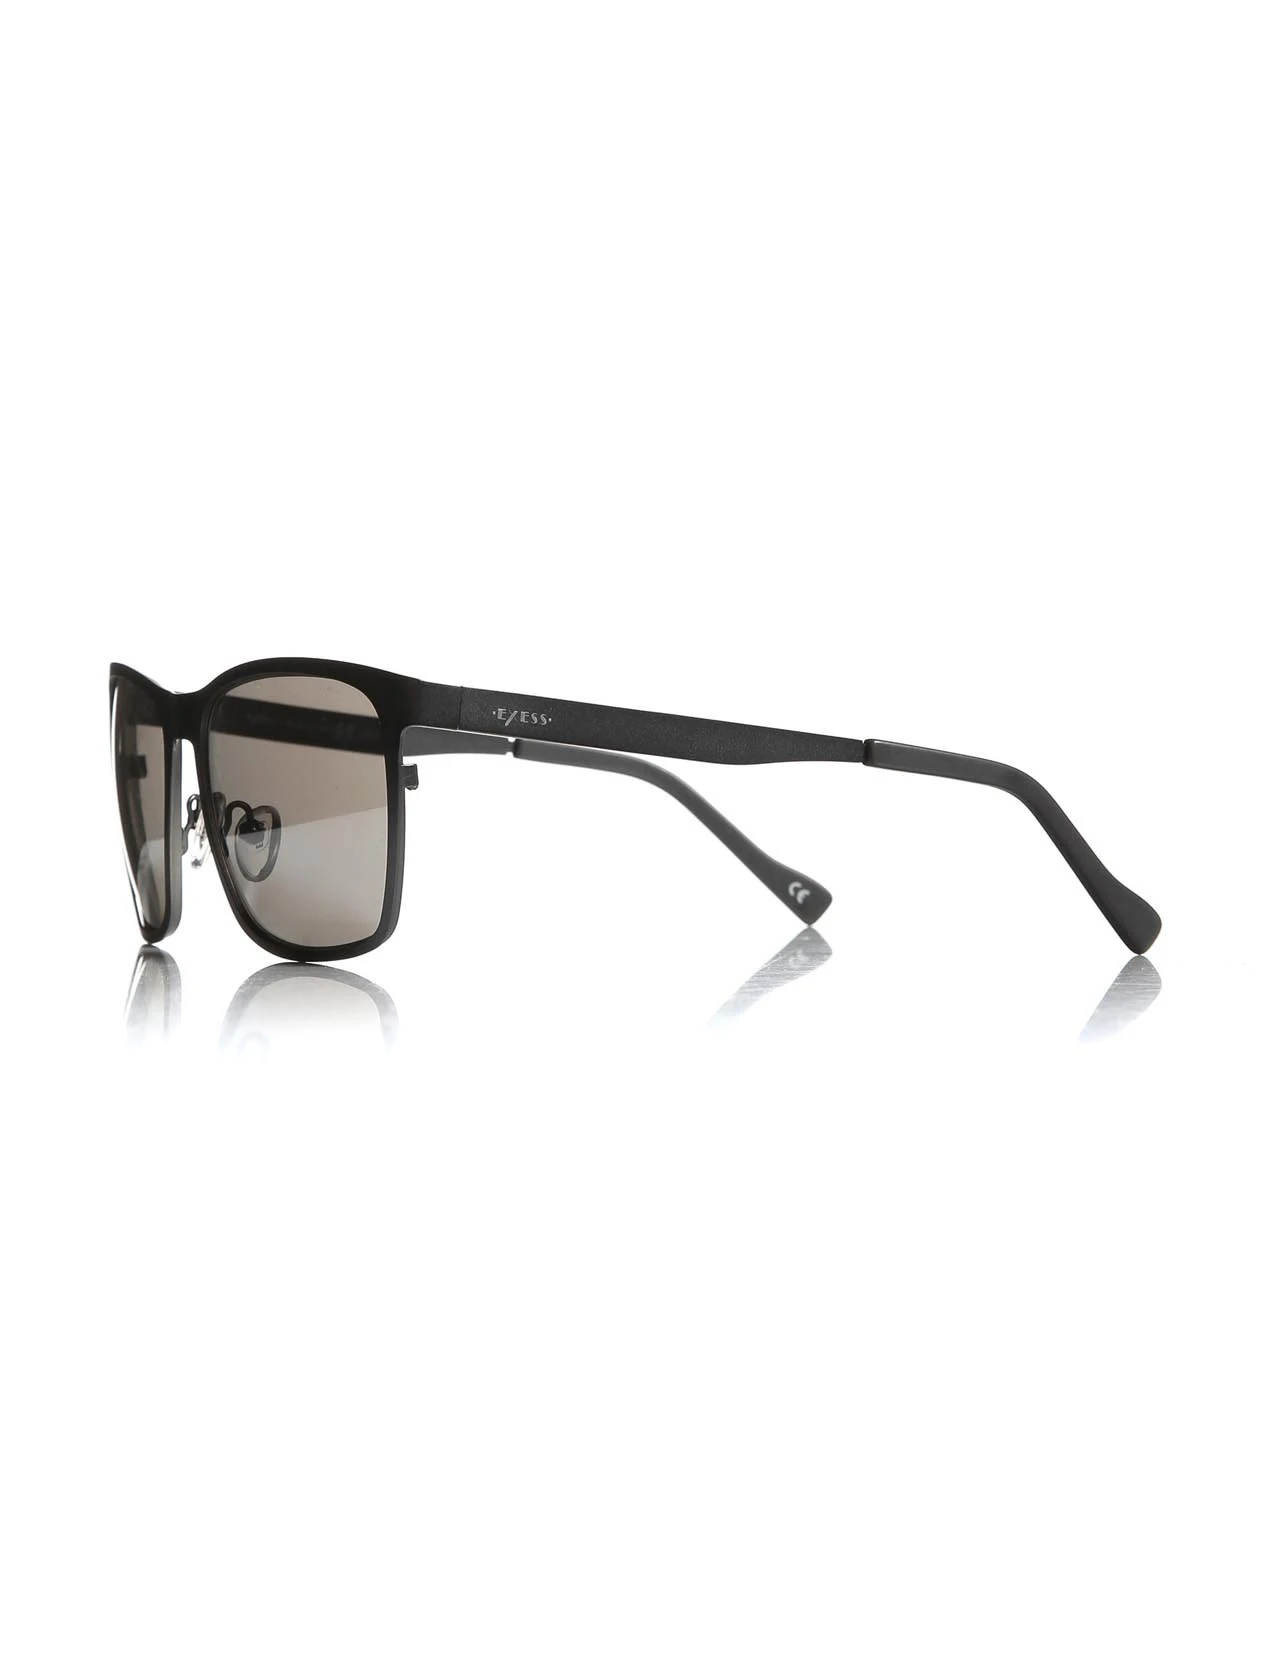 

Unisex sunglasses e 9594 d070 km metal metallic organic square square 56-17-140 exess